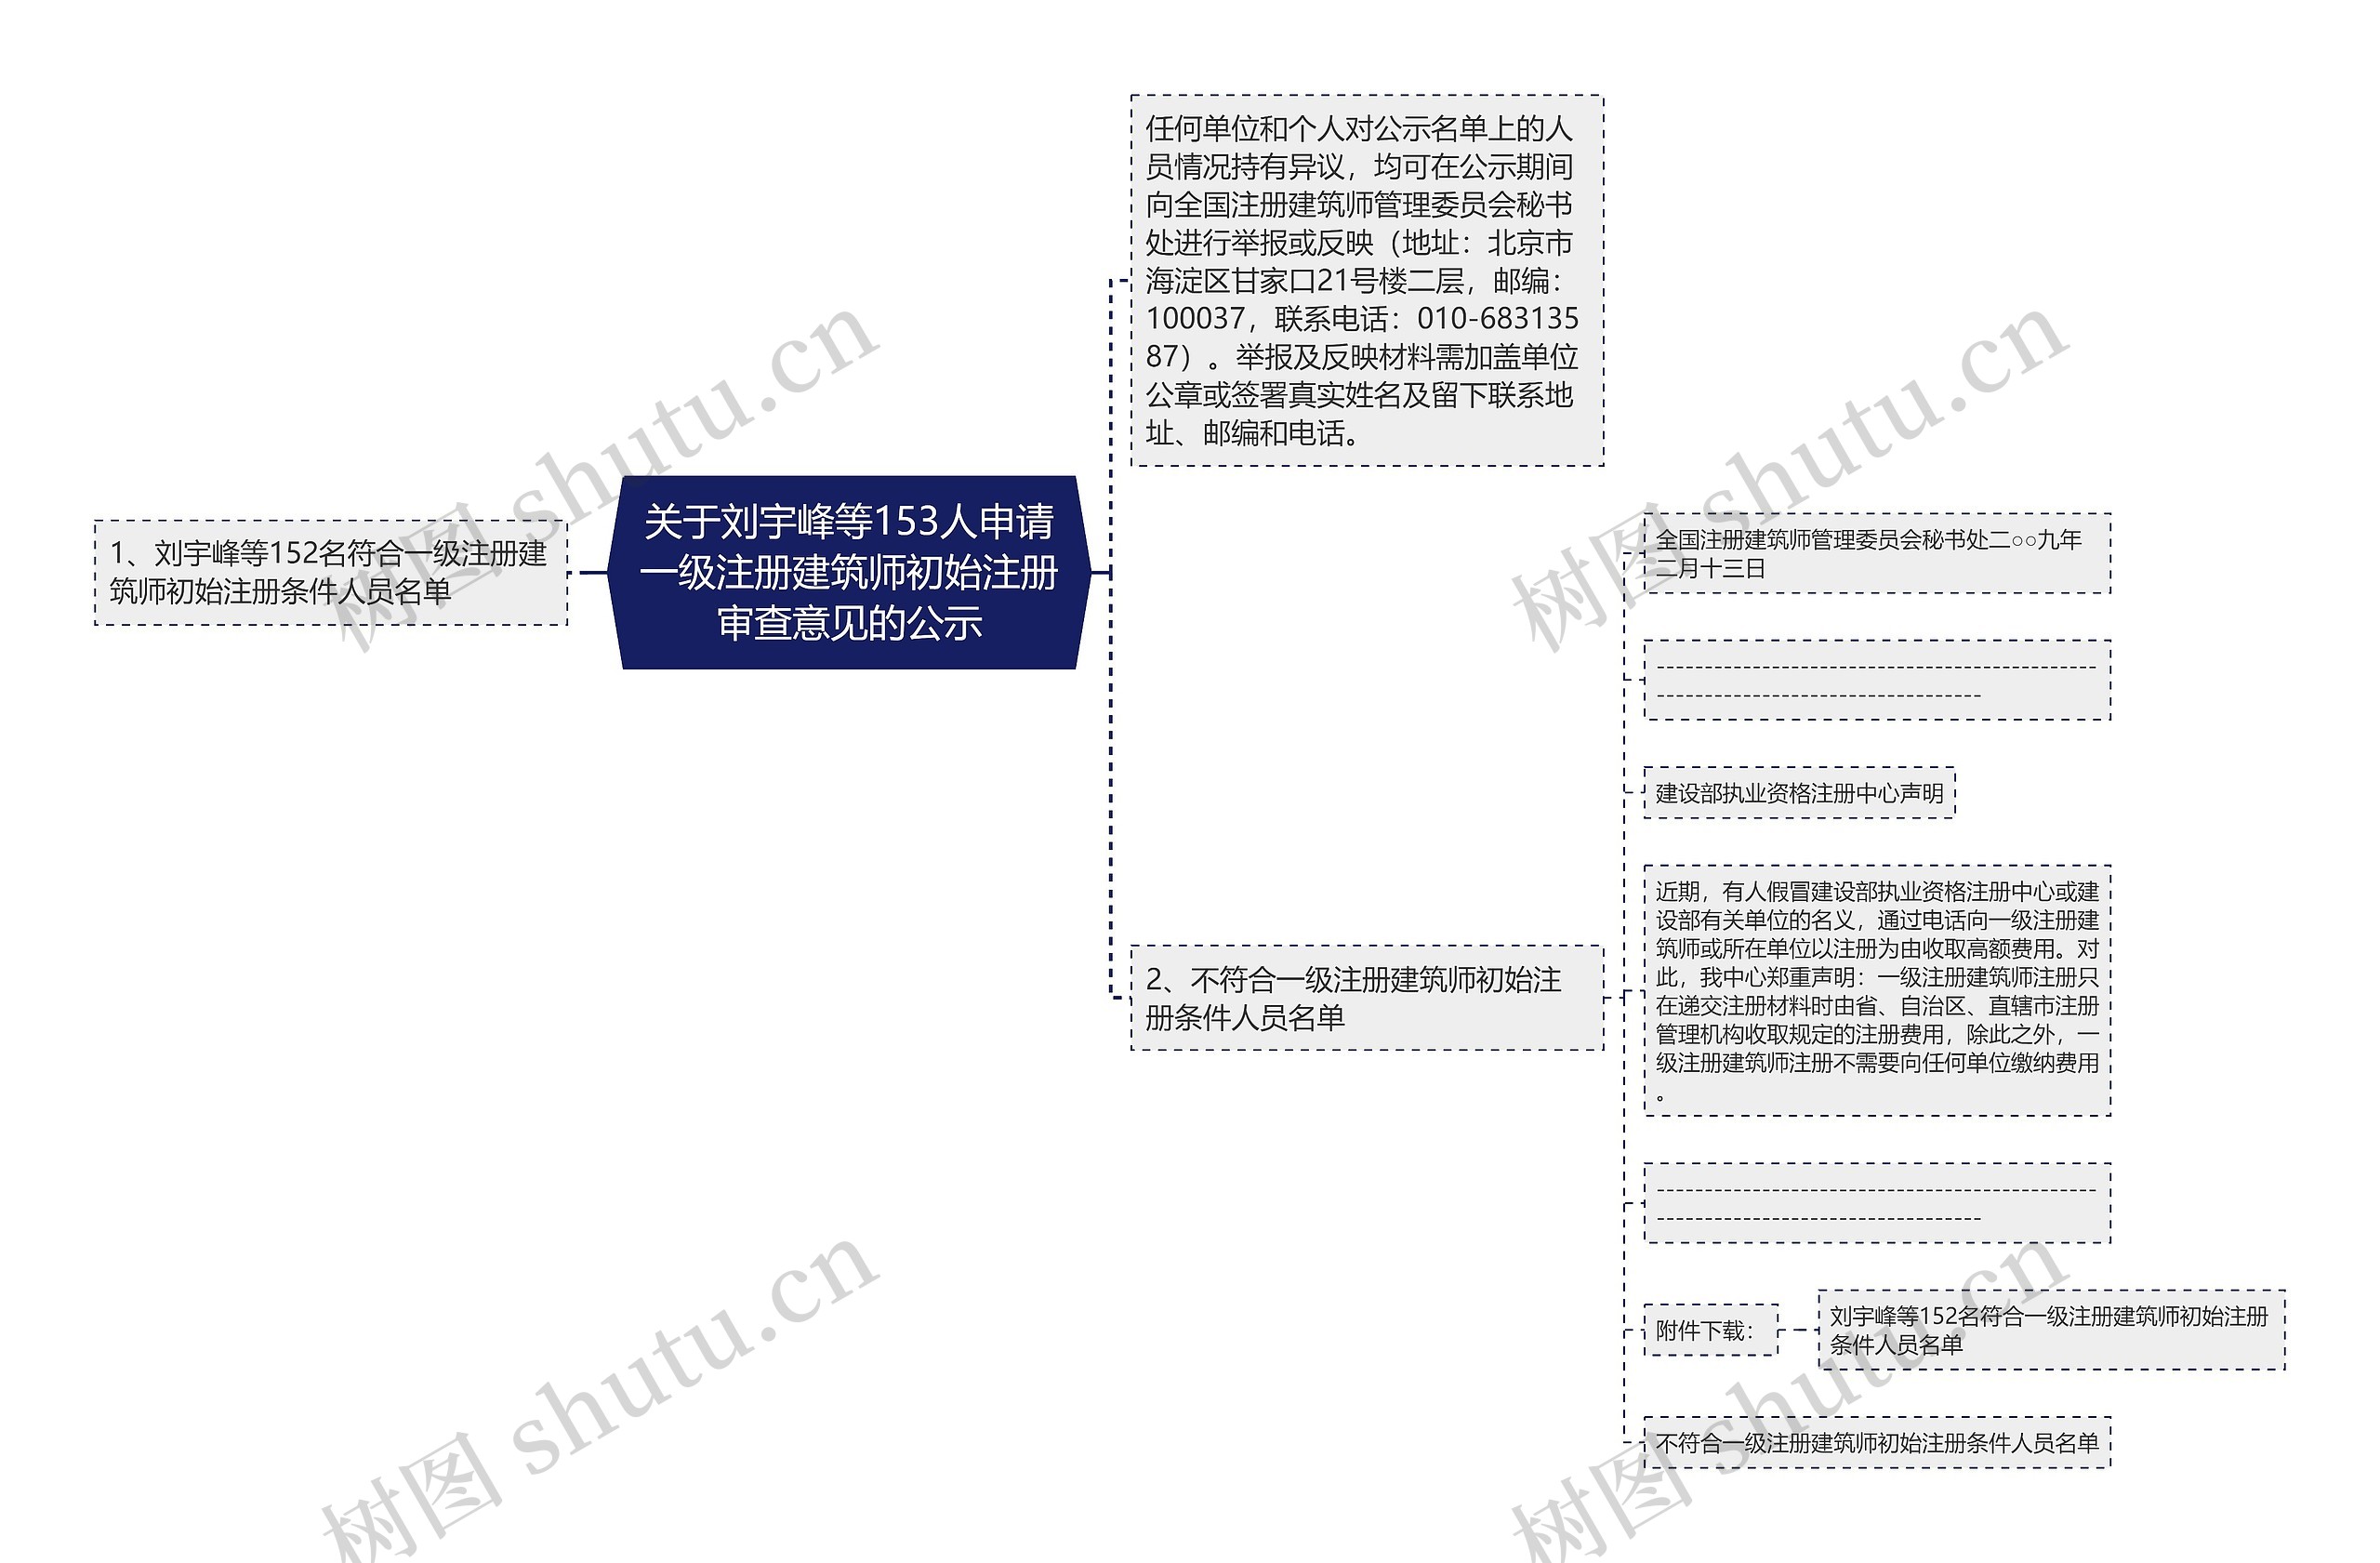 关于刘宇峰等153人申请一级注册建筑师初始注册审查意见的公示